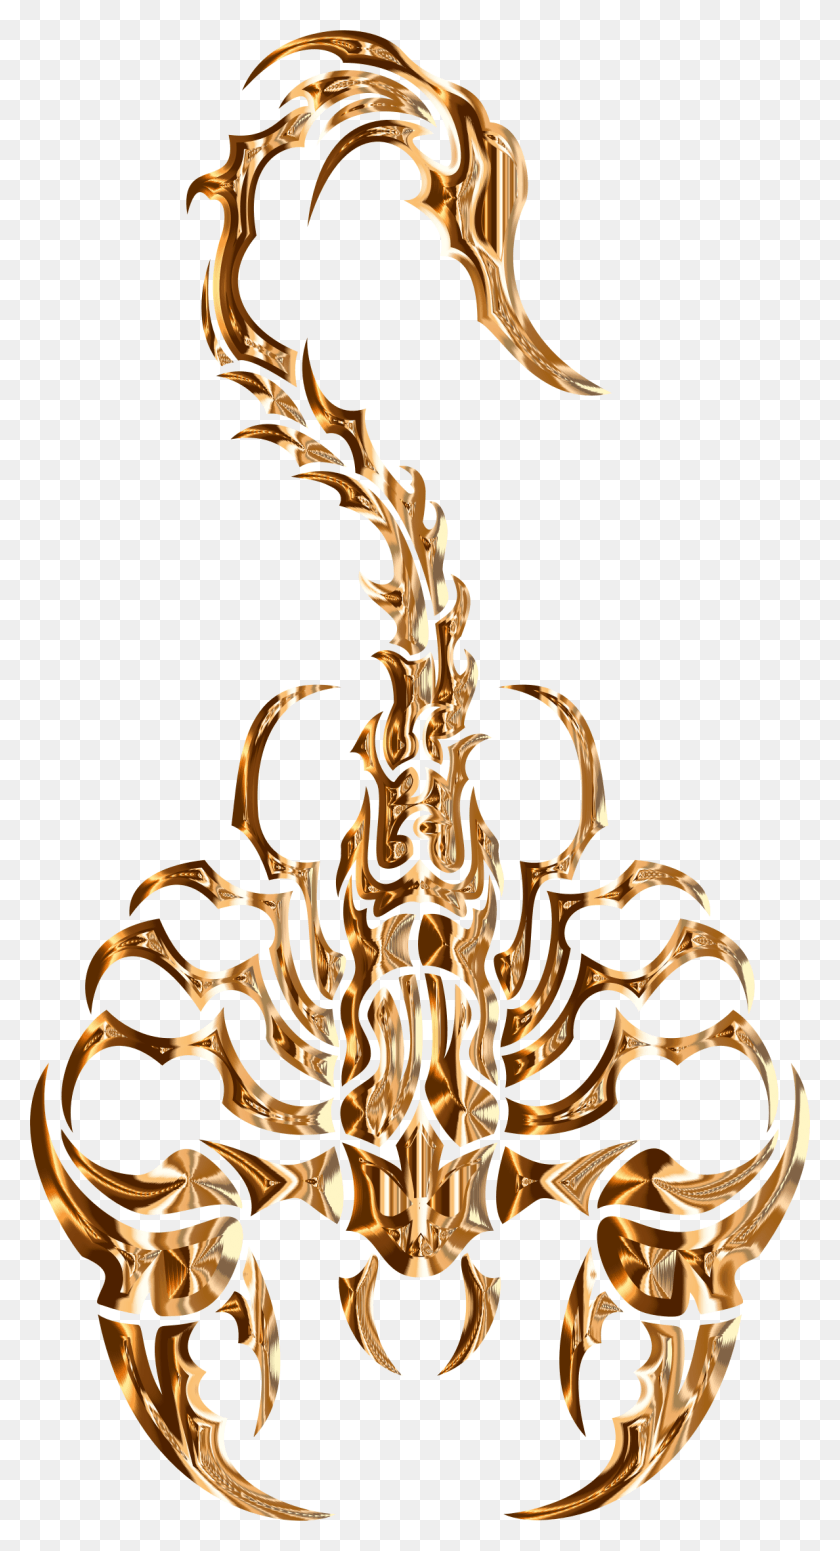 1188x2272 Este Diseño De Iconos Gratis De Elegante Escorpión Tribal Dibujo De Escorpión, Lámpara De Araña, Antler Hd Png